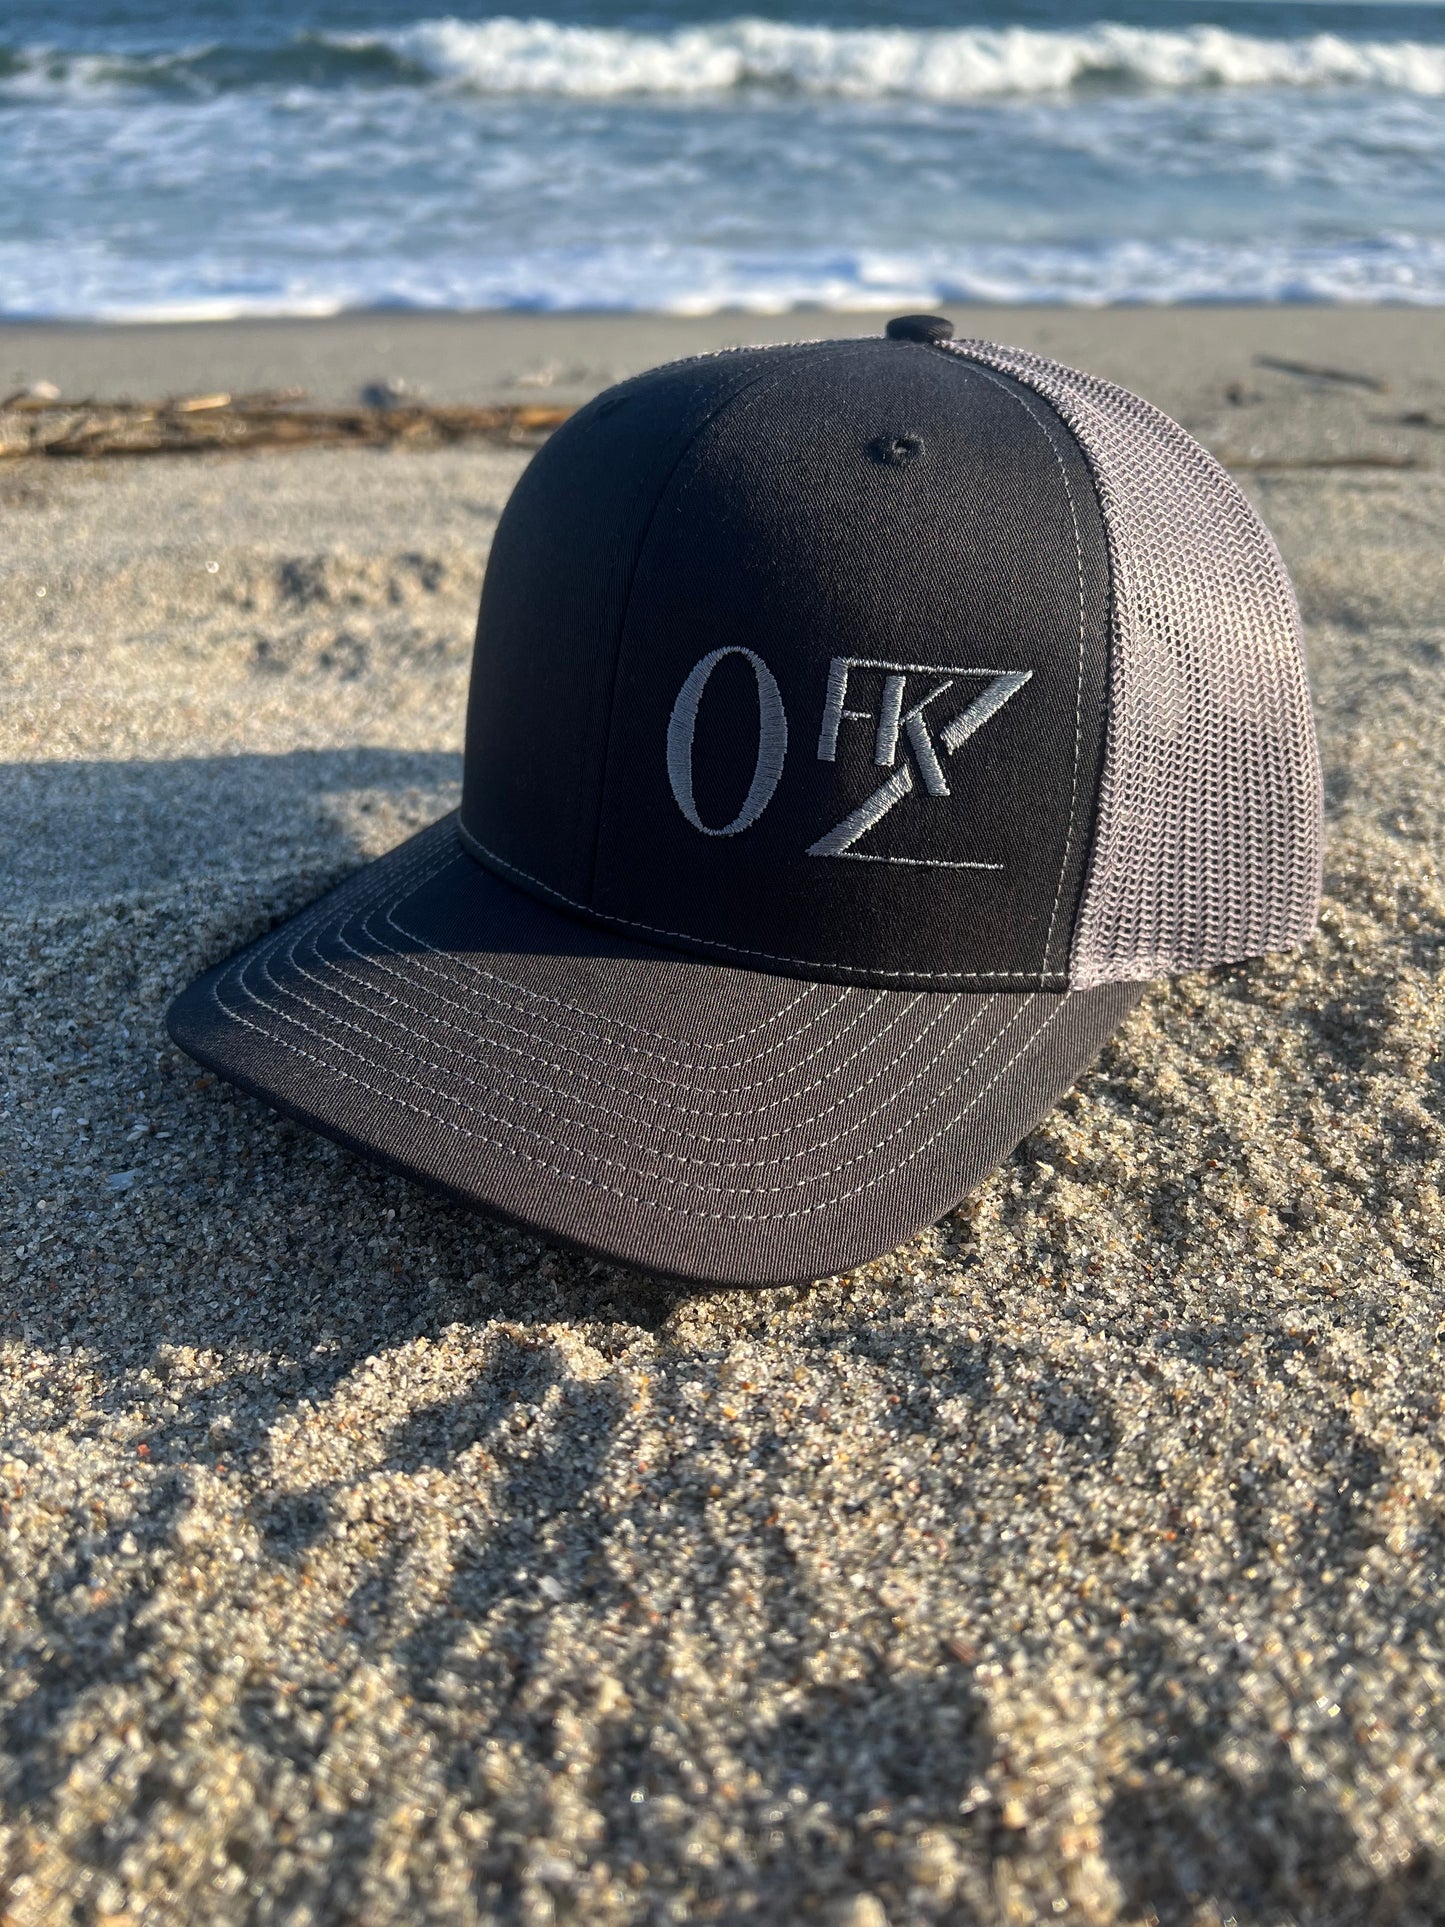 0FKZ Snapback Trucker hat in Black/Charcoal